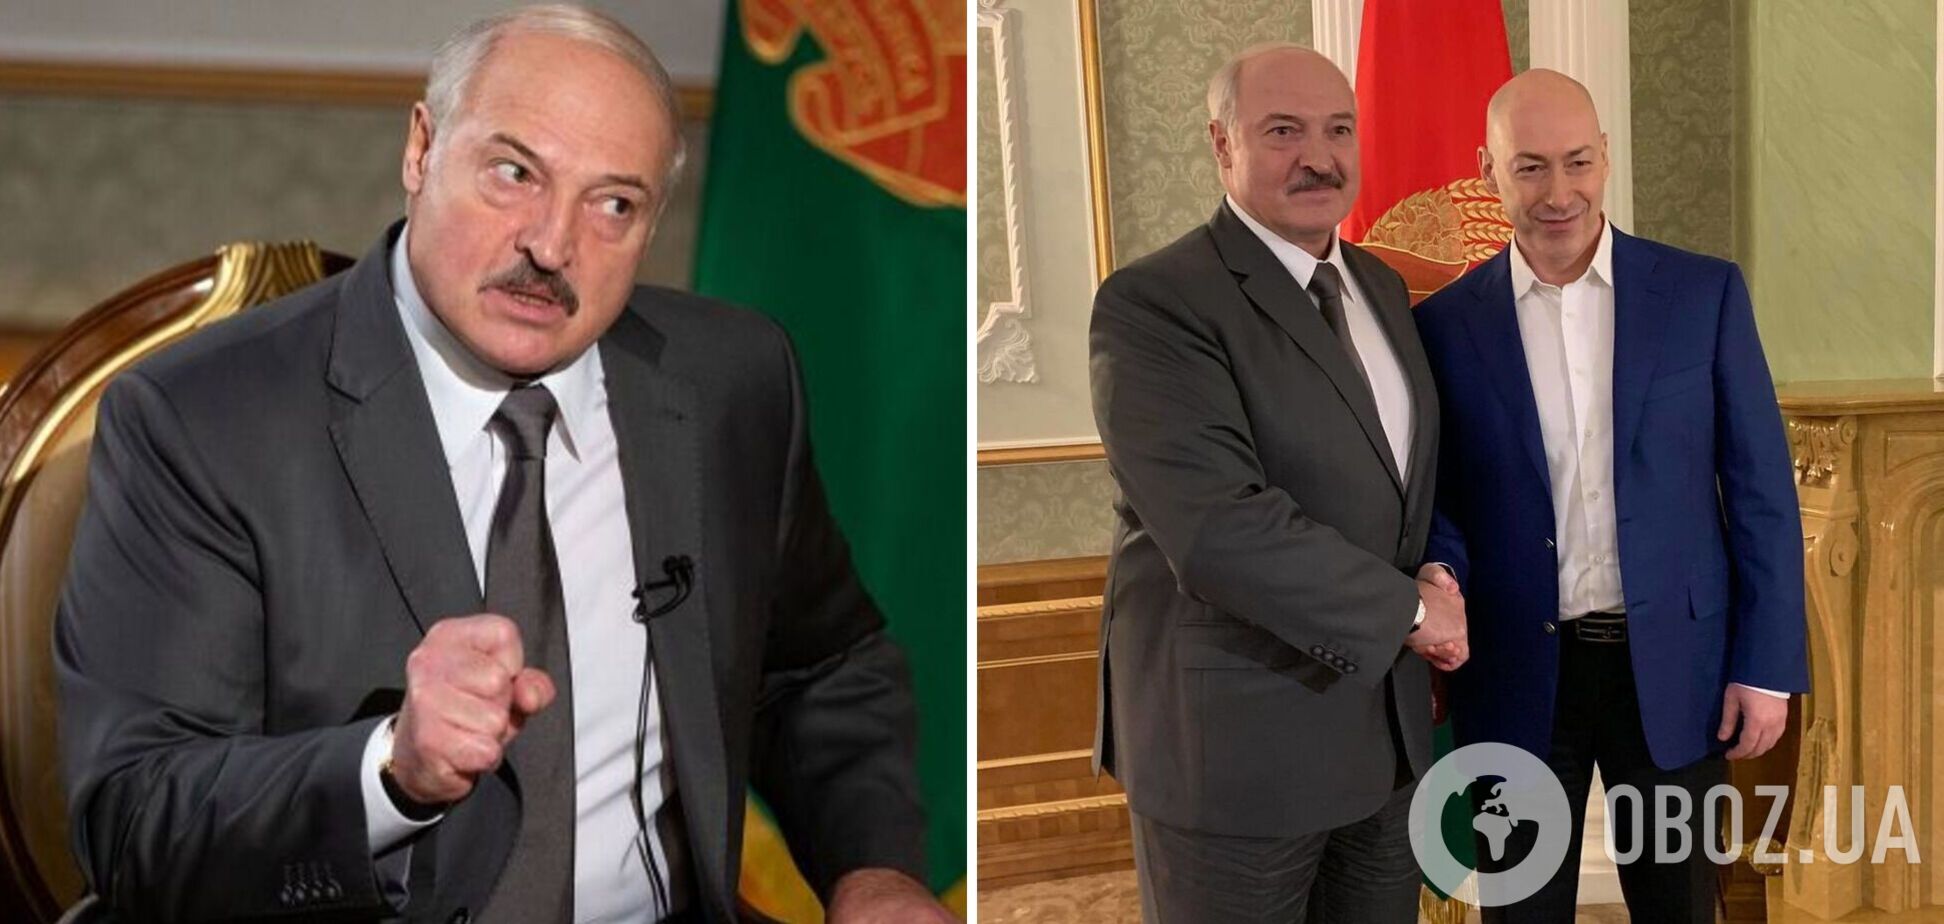 Гордон – о Лукашенко, который его обманул: лжец, подонок и фашист, такой же как и Путин